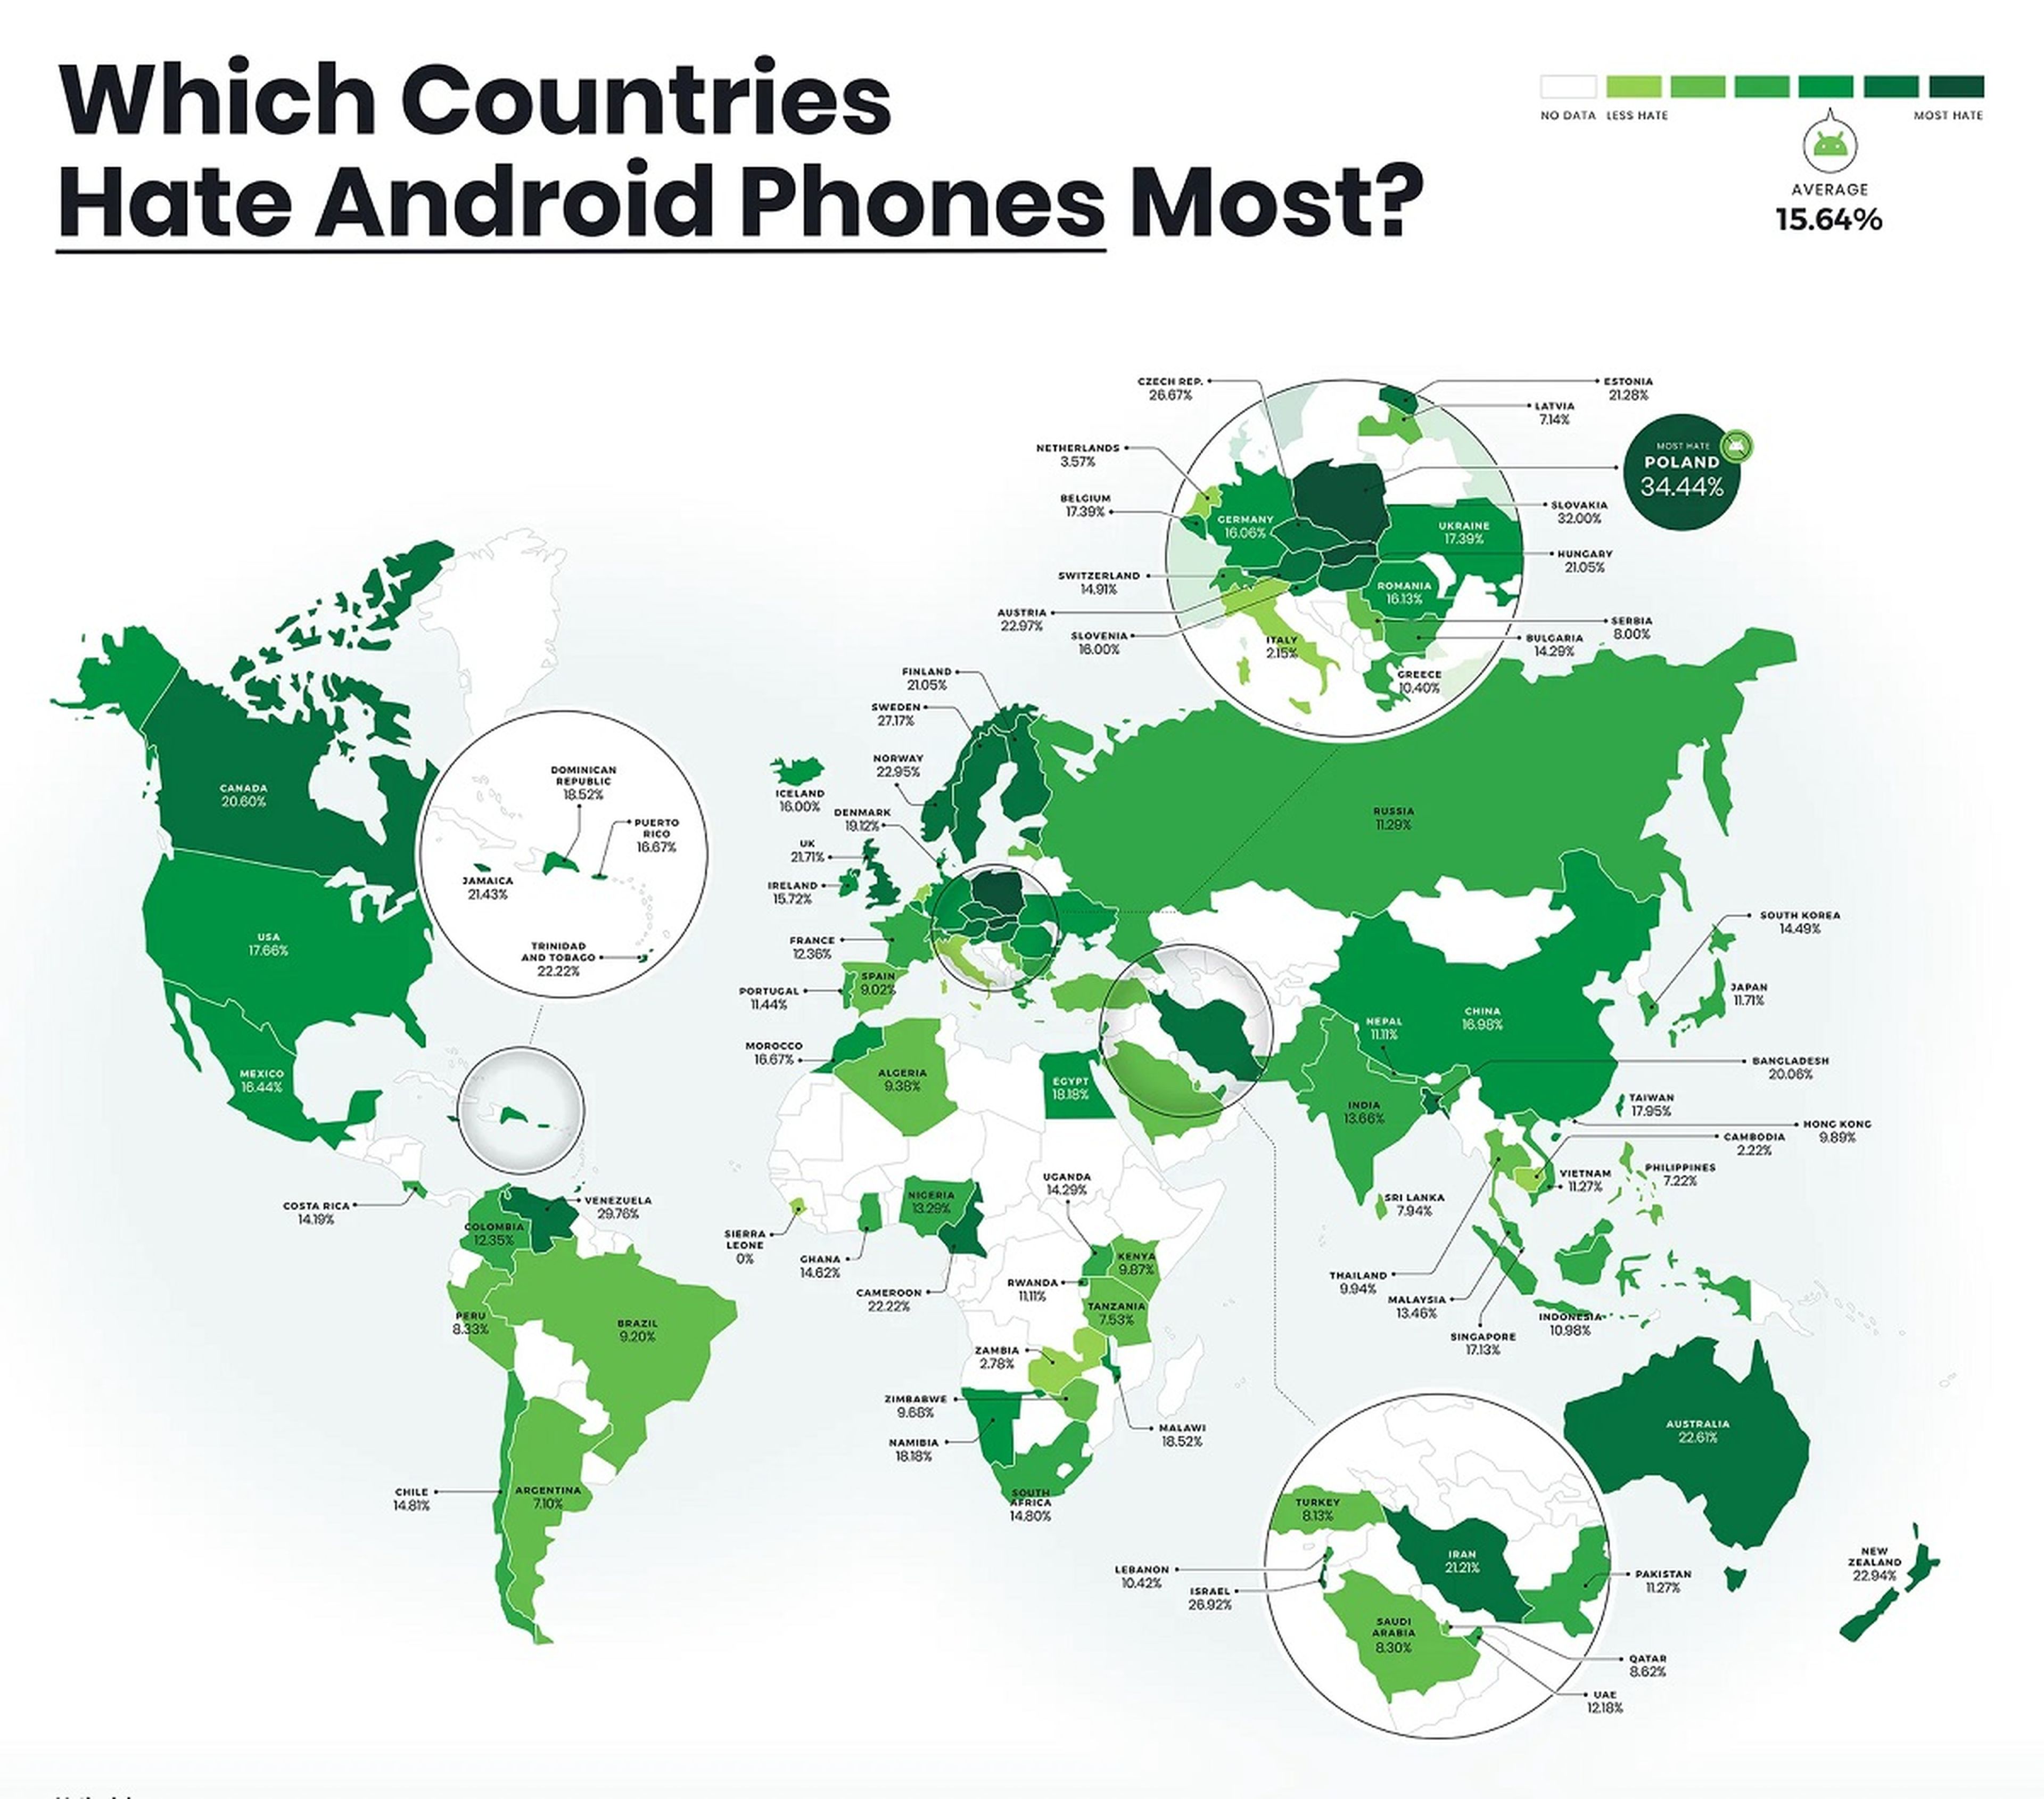 España es uno de los países que menos odia tanto los iPhone, con un 14,52%, como los Android, con un 9,02% de tuits de odio entre los analizados.